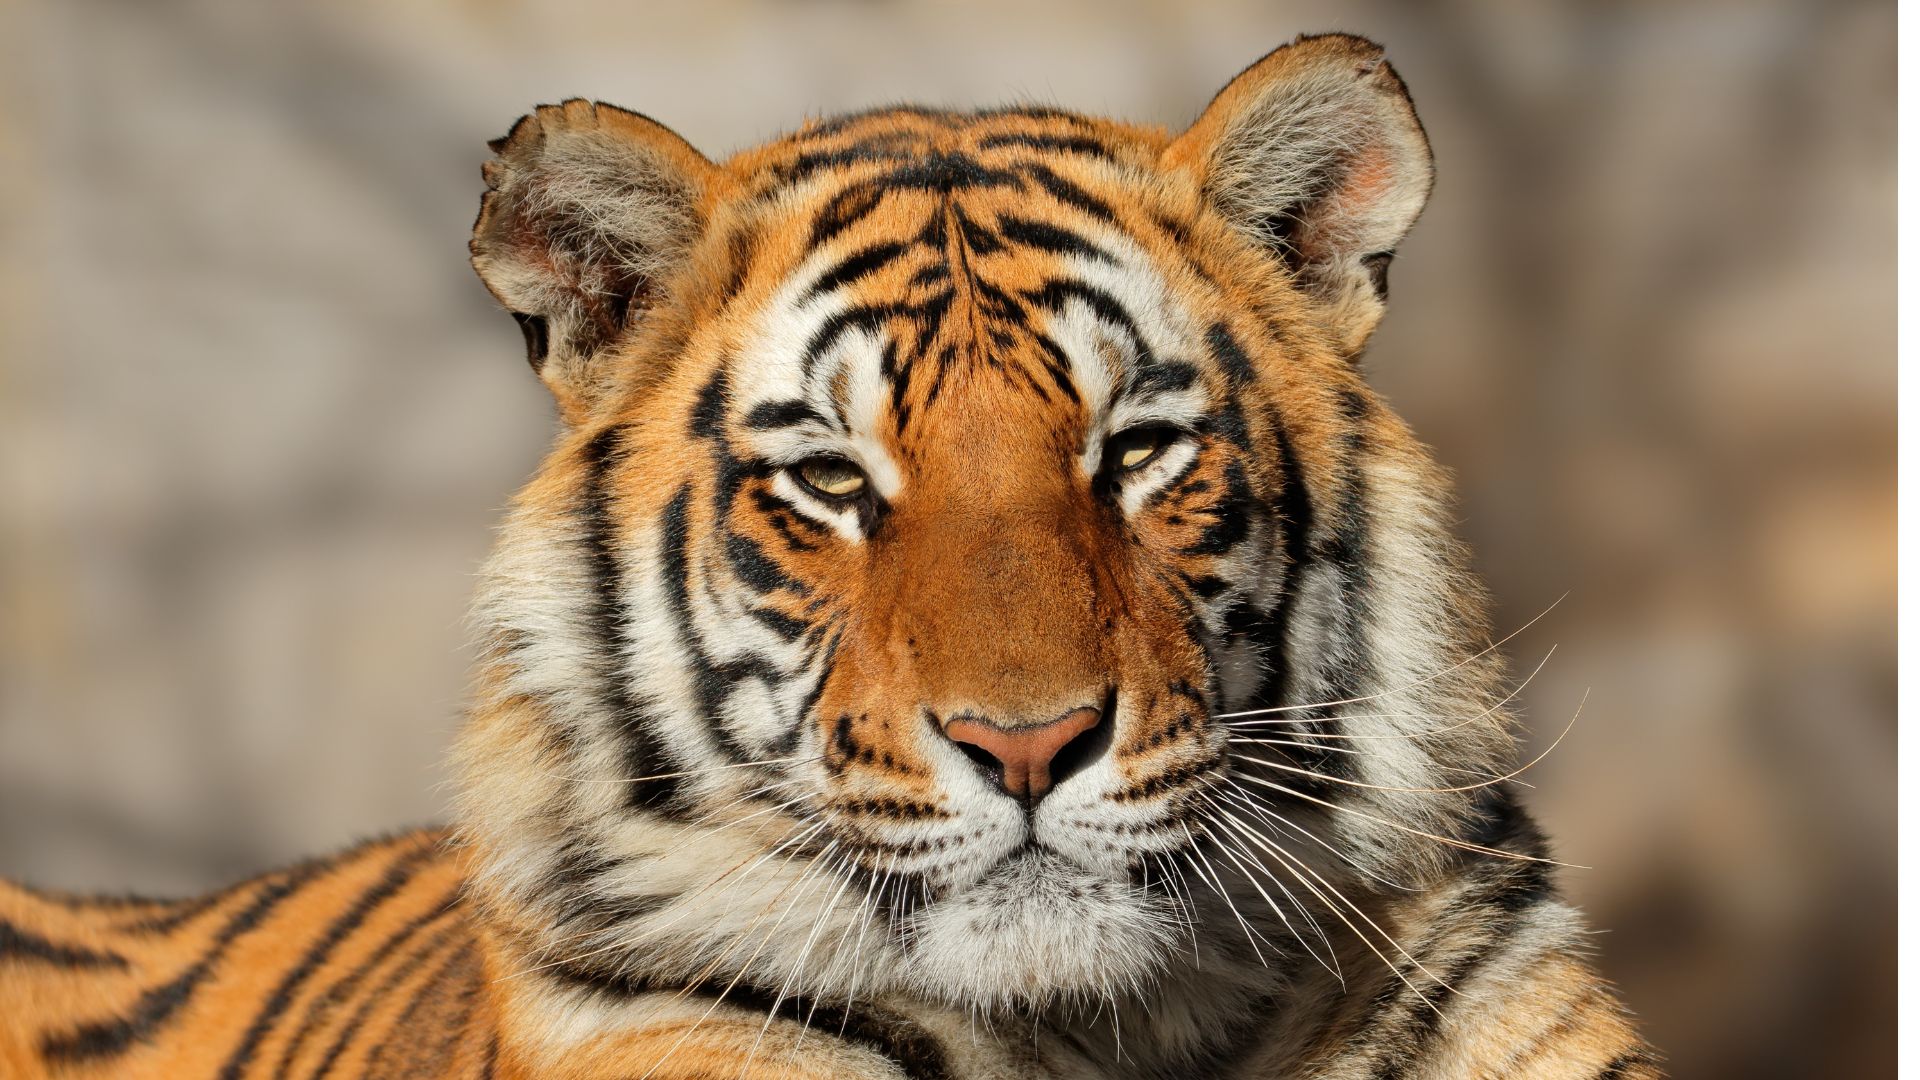 larangan perdagangan harimau di indonesia